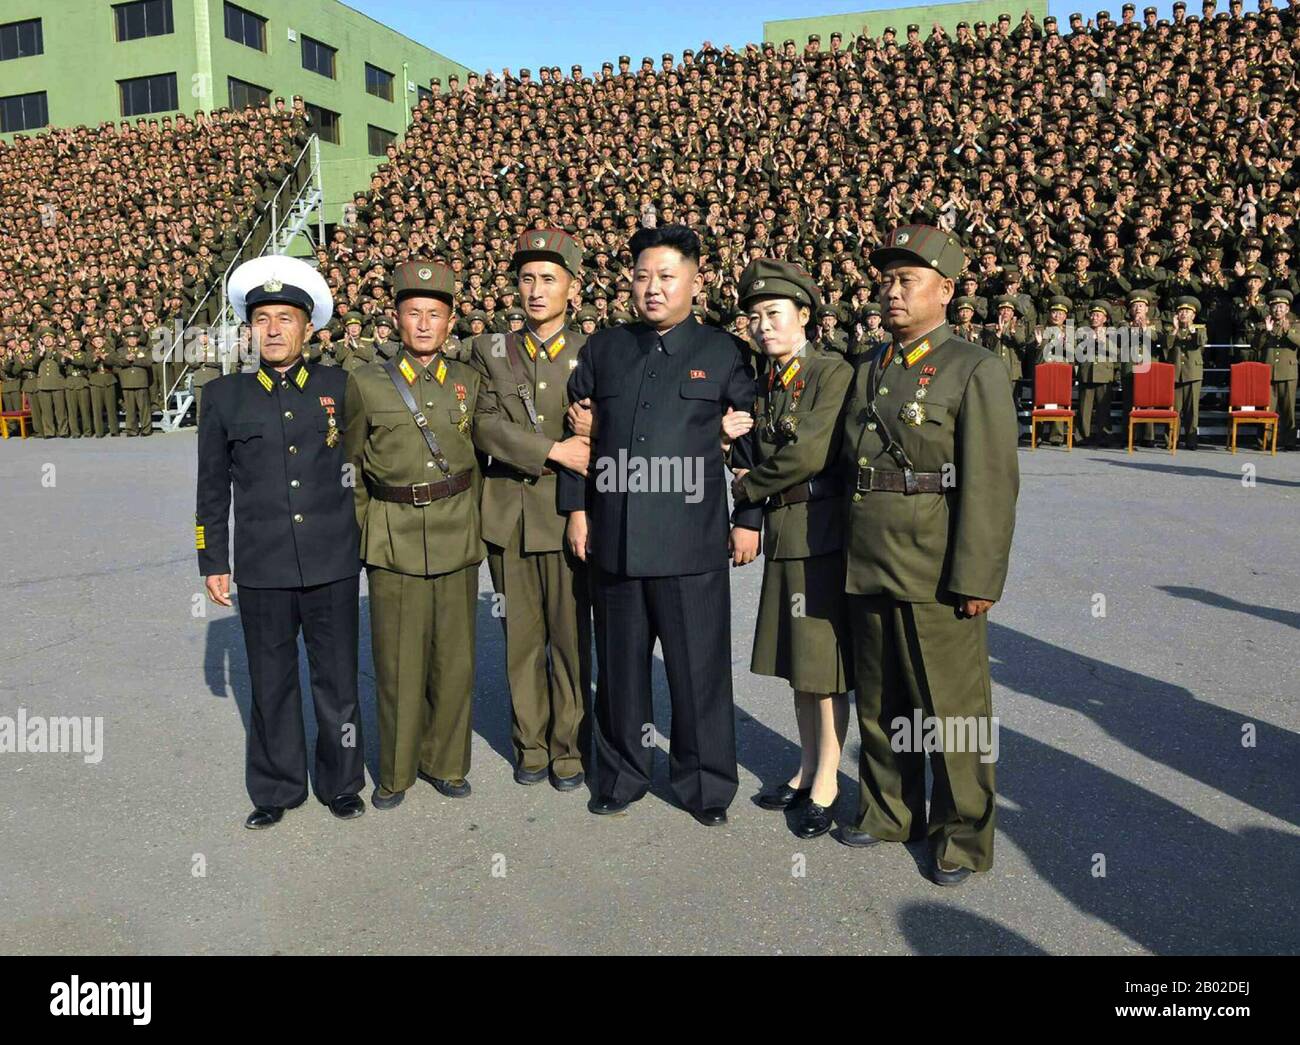 Kim Jong-un, auch als Kim Jong-eun oder Kim jung-eun romanisiert, (* 8. Januar 1983 oder 1984), ist der amtierende Oberste Nordkoreas, Stand 28. Dezember 2011. Er wurde nach der Staatsbestattung für seinen Vater Kim Jong-il offiziell zum obersten Führer erklärt. Er ist der dritte und jüngste Sohn seines verstorbenen Vorgängers Kim Jong-il und seines Konsovtes Ko Young-hee. Ab Ende 2010 wurde Kim Jong-un als Erbe der Führung der Nation angesehen und nach dem Tod seines Vaters wurde er vom nordkoreanischen Staatsfernsehen als "Großer Nachfolger" angekündigt. Er ist ein Daejang im koreanischen Stockfoto